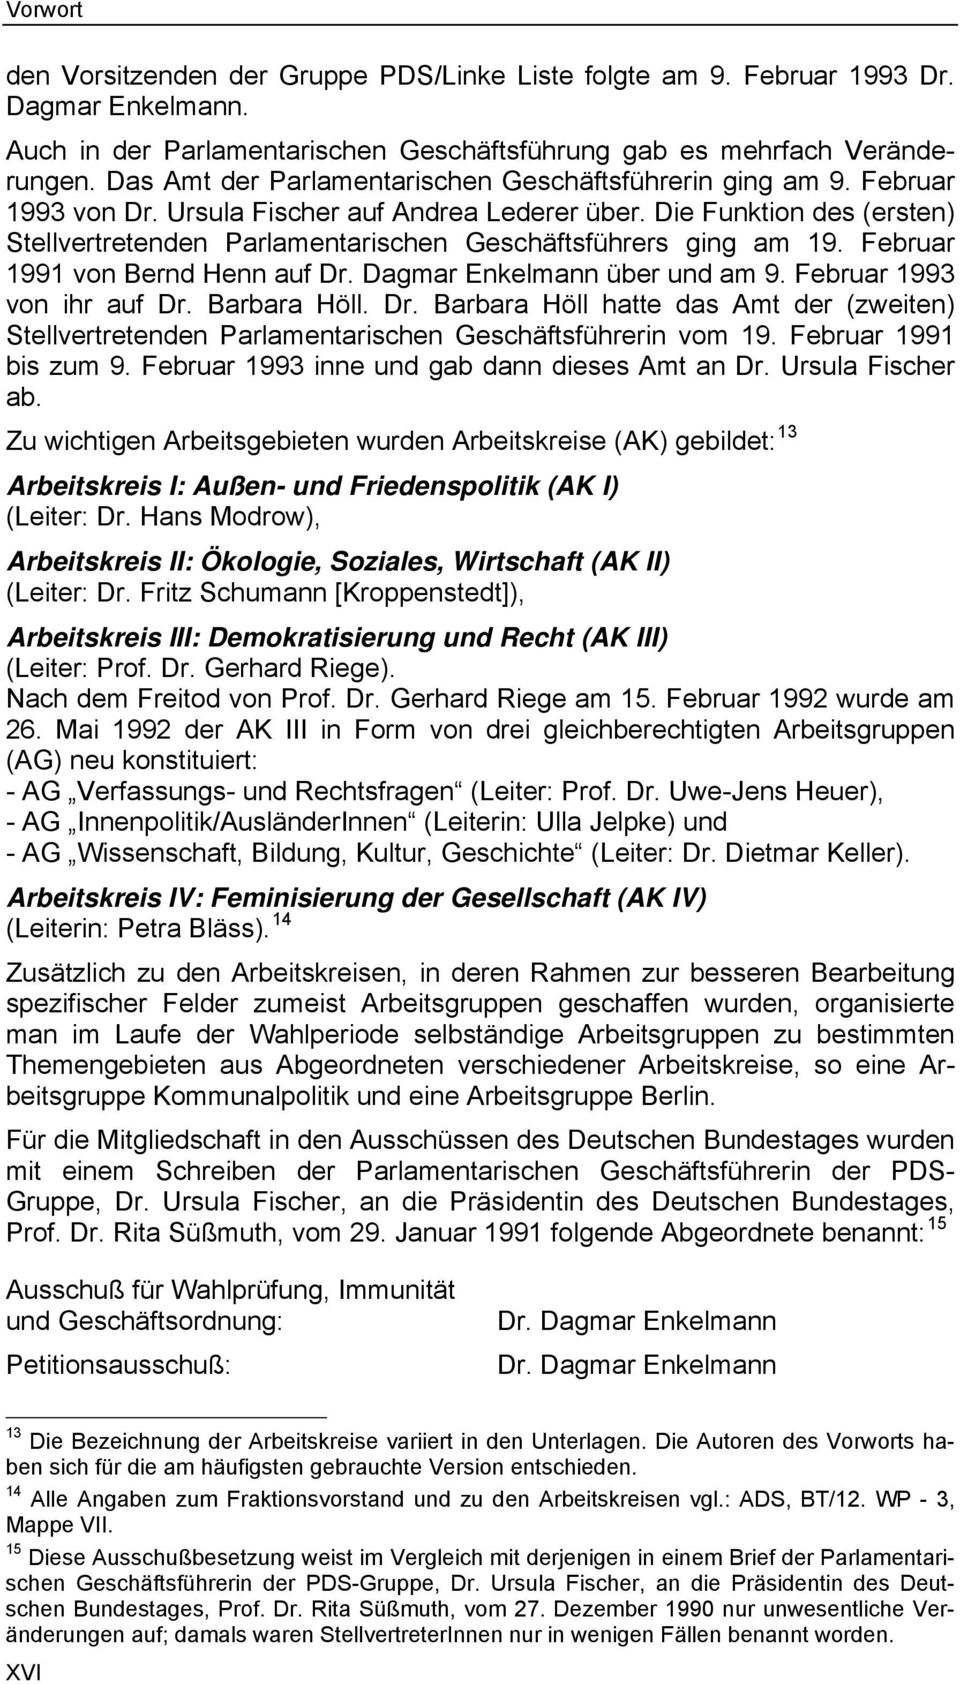 Die Funktion des (ersten) Stellvertretenden Parlamentarischen Geschäftsführers ging am 19. Februar 1991 von Bernd Henn auf Dr. Dagmar Enkelmann über und am 9. Februar 1993 von ihr auf Dr.